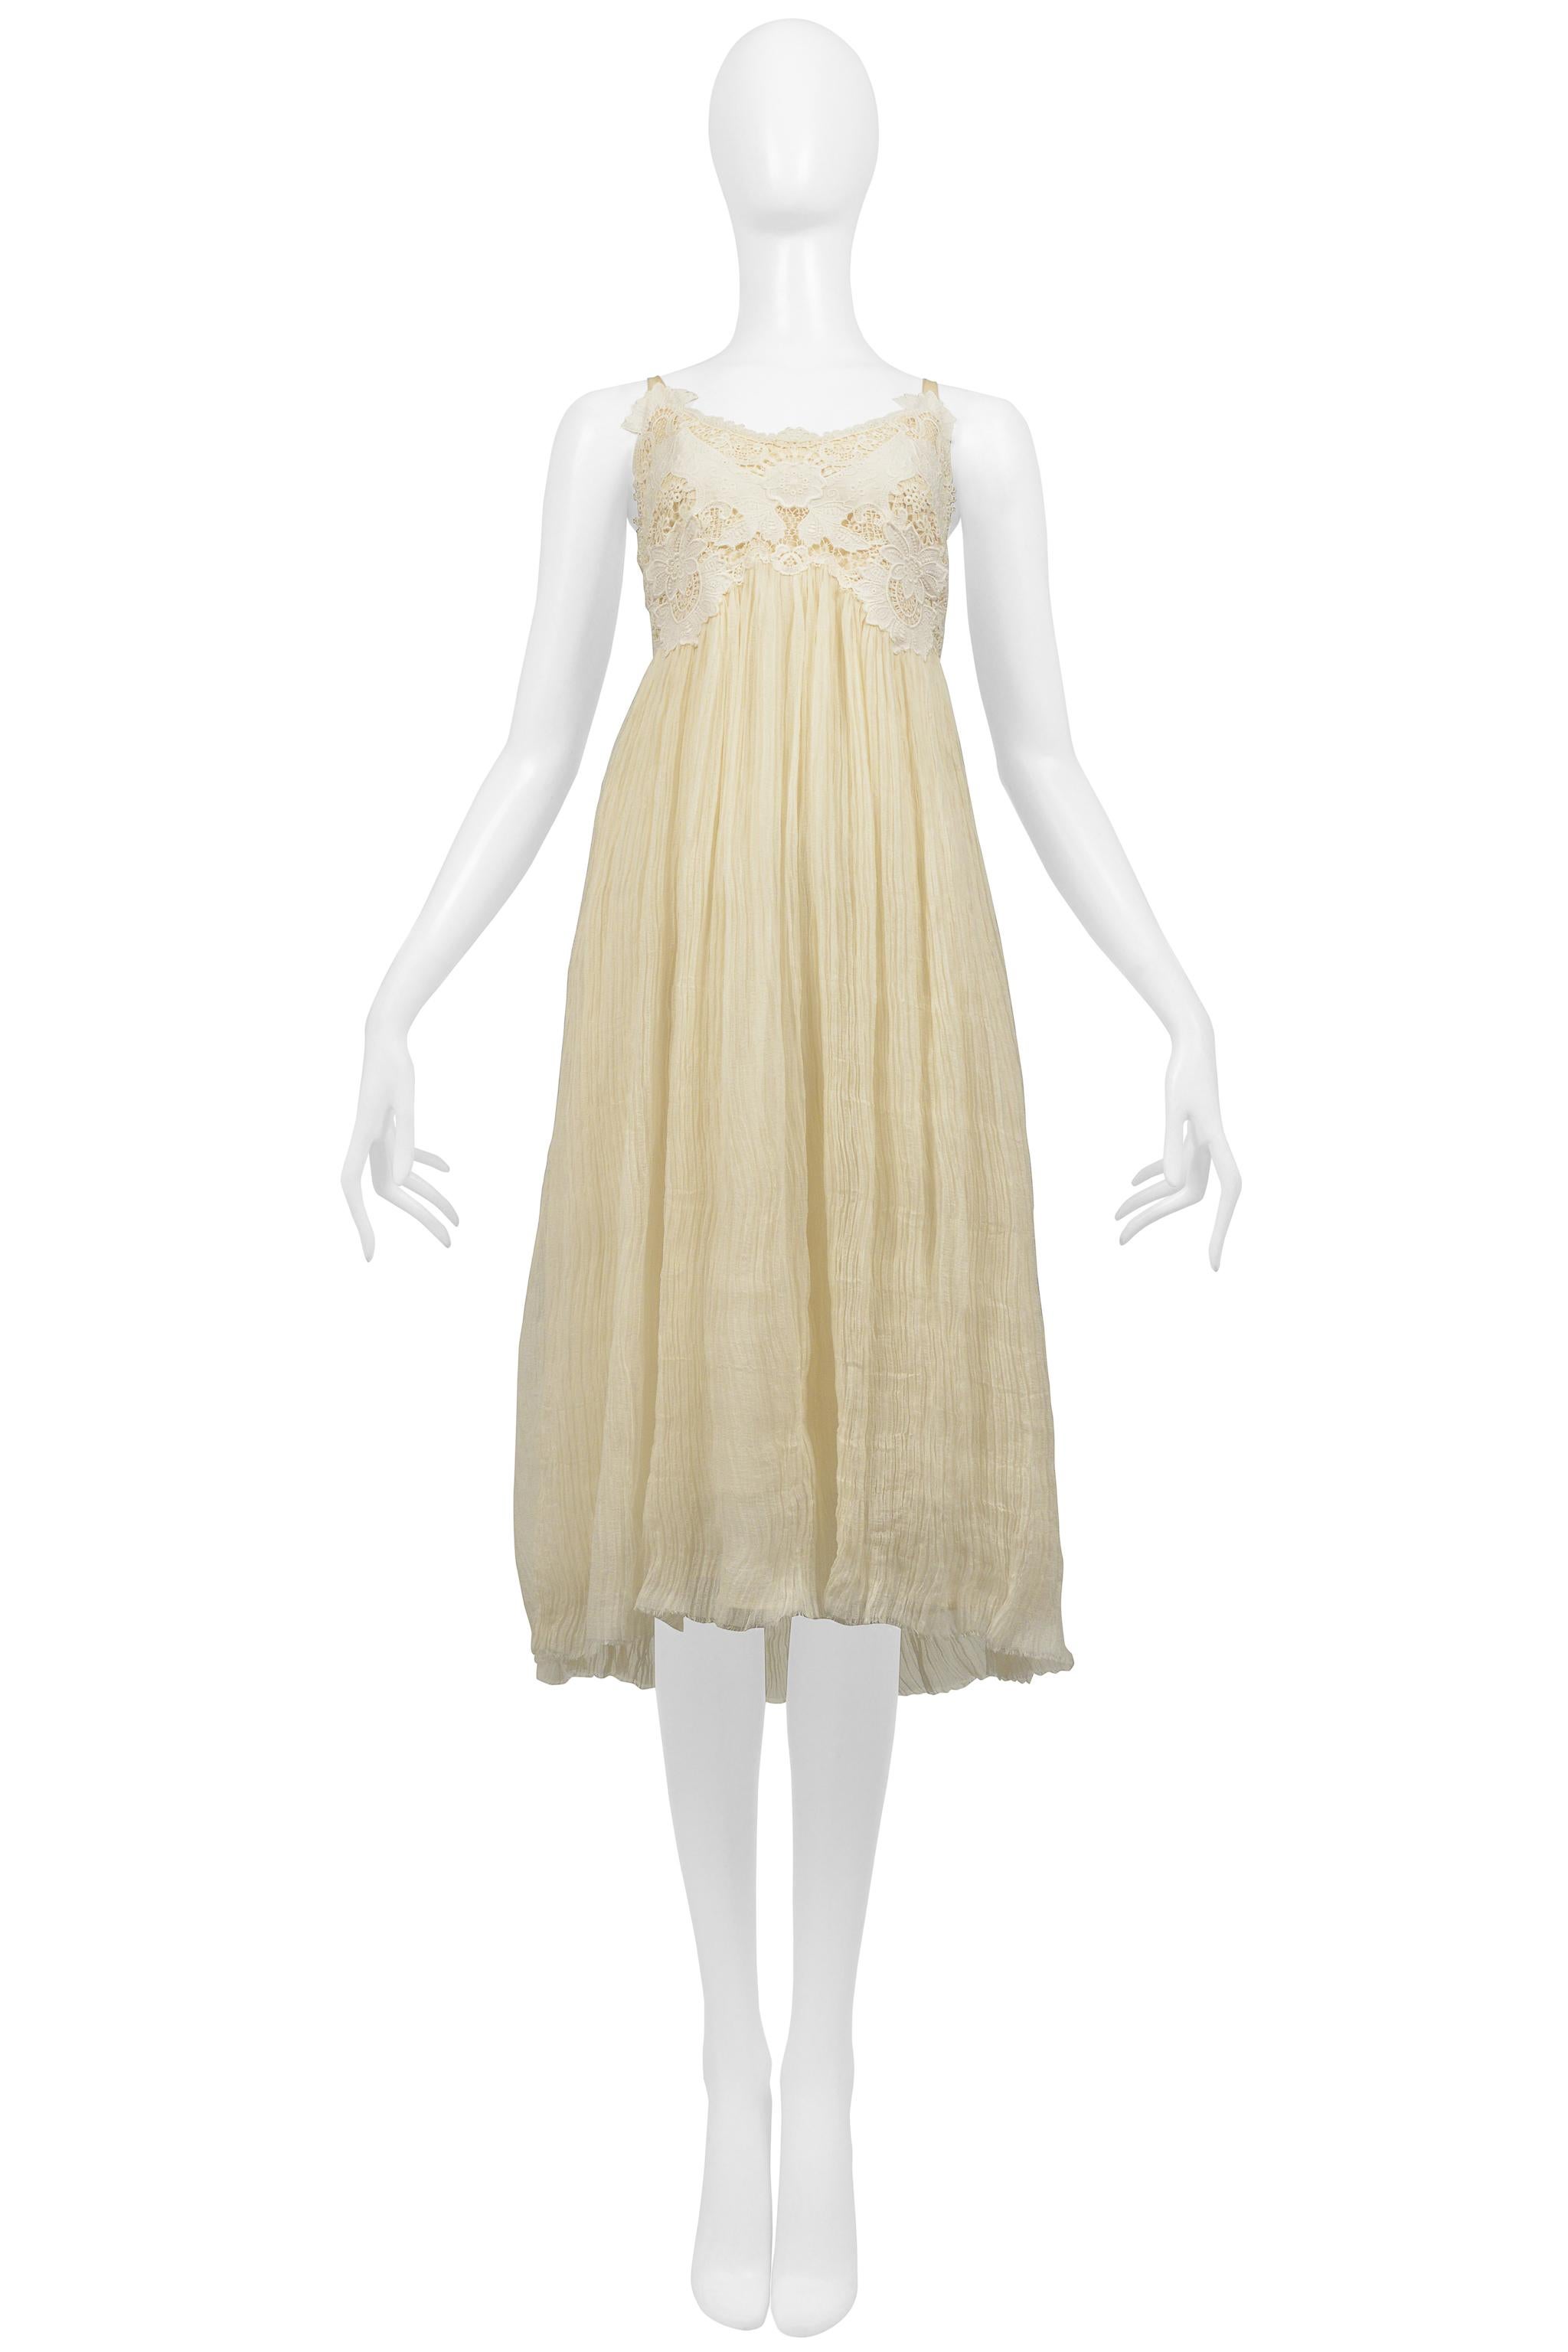 Resurrection Vintage a le plaisir de vous proposer une robe vintage Alexander McQueen blanc cassé de la collection 2005 avec un corsage en dentelle, un corps froissé avec un ourlet à bords bruts, des bretelles spaghetti, une longueur midi et une